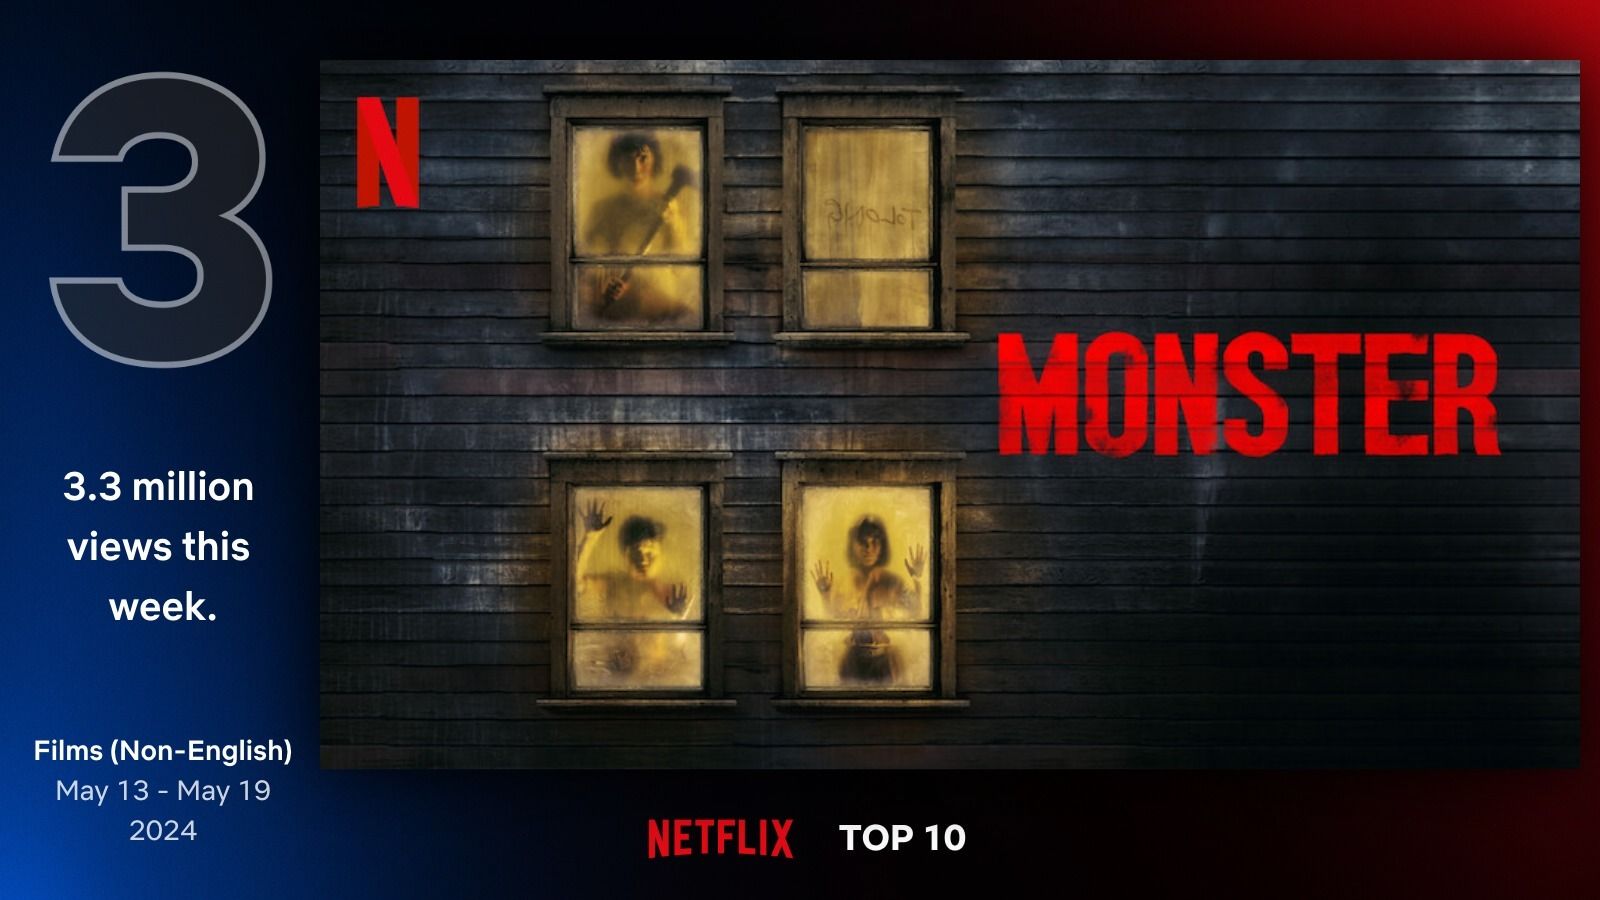 Film Monster menduduki posisi Top 10 Film di 25 negara